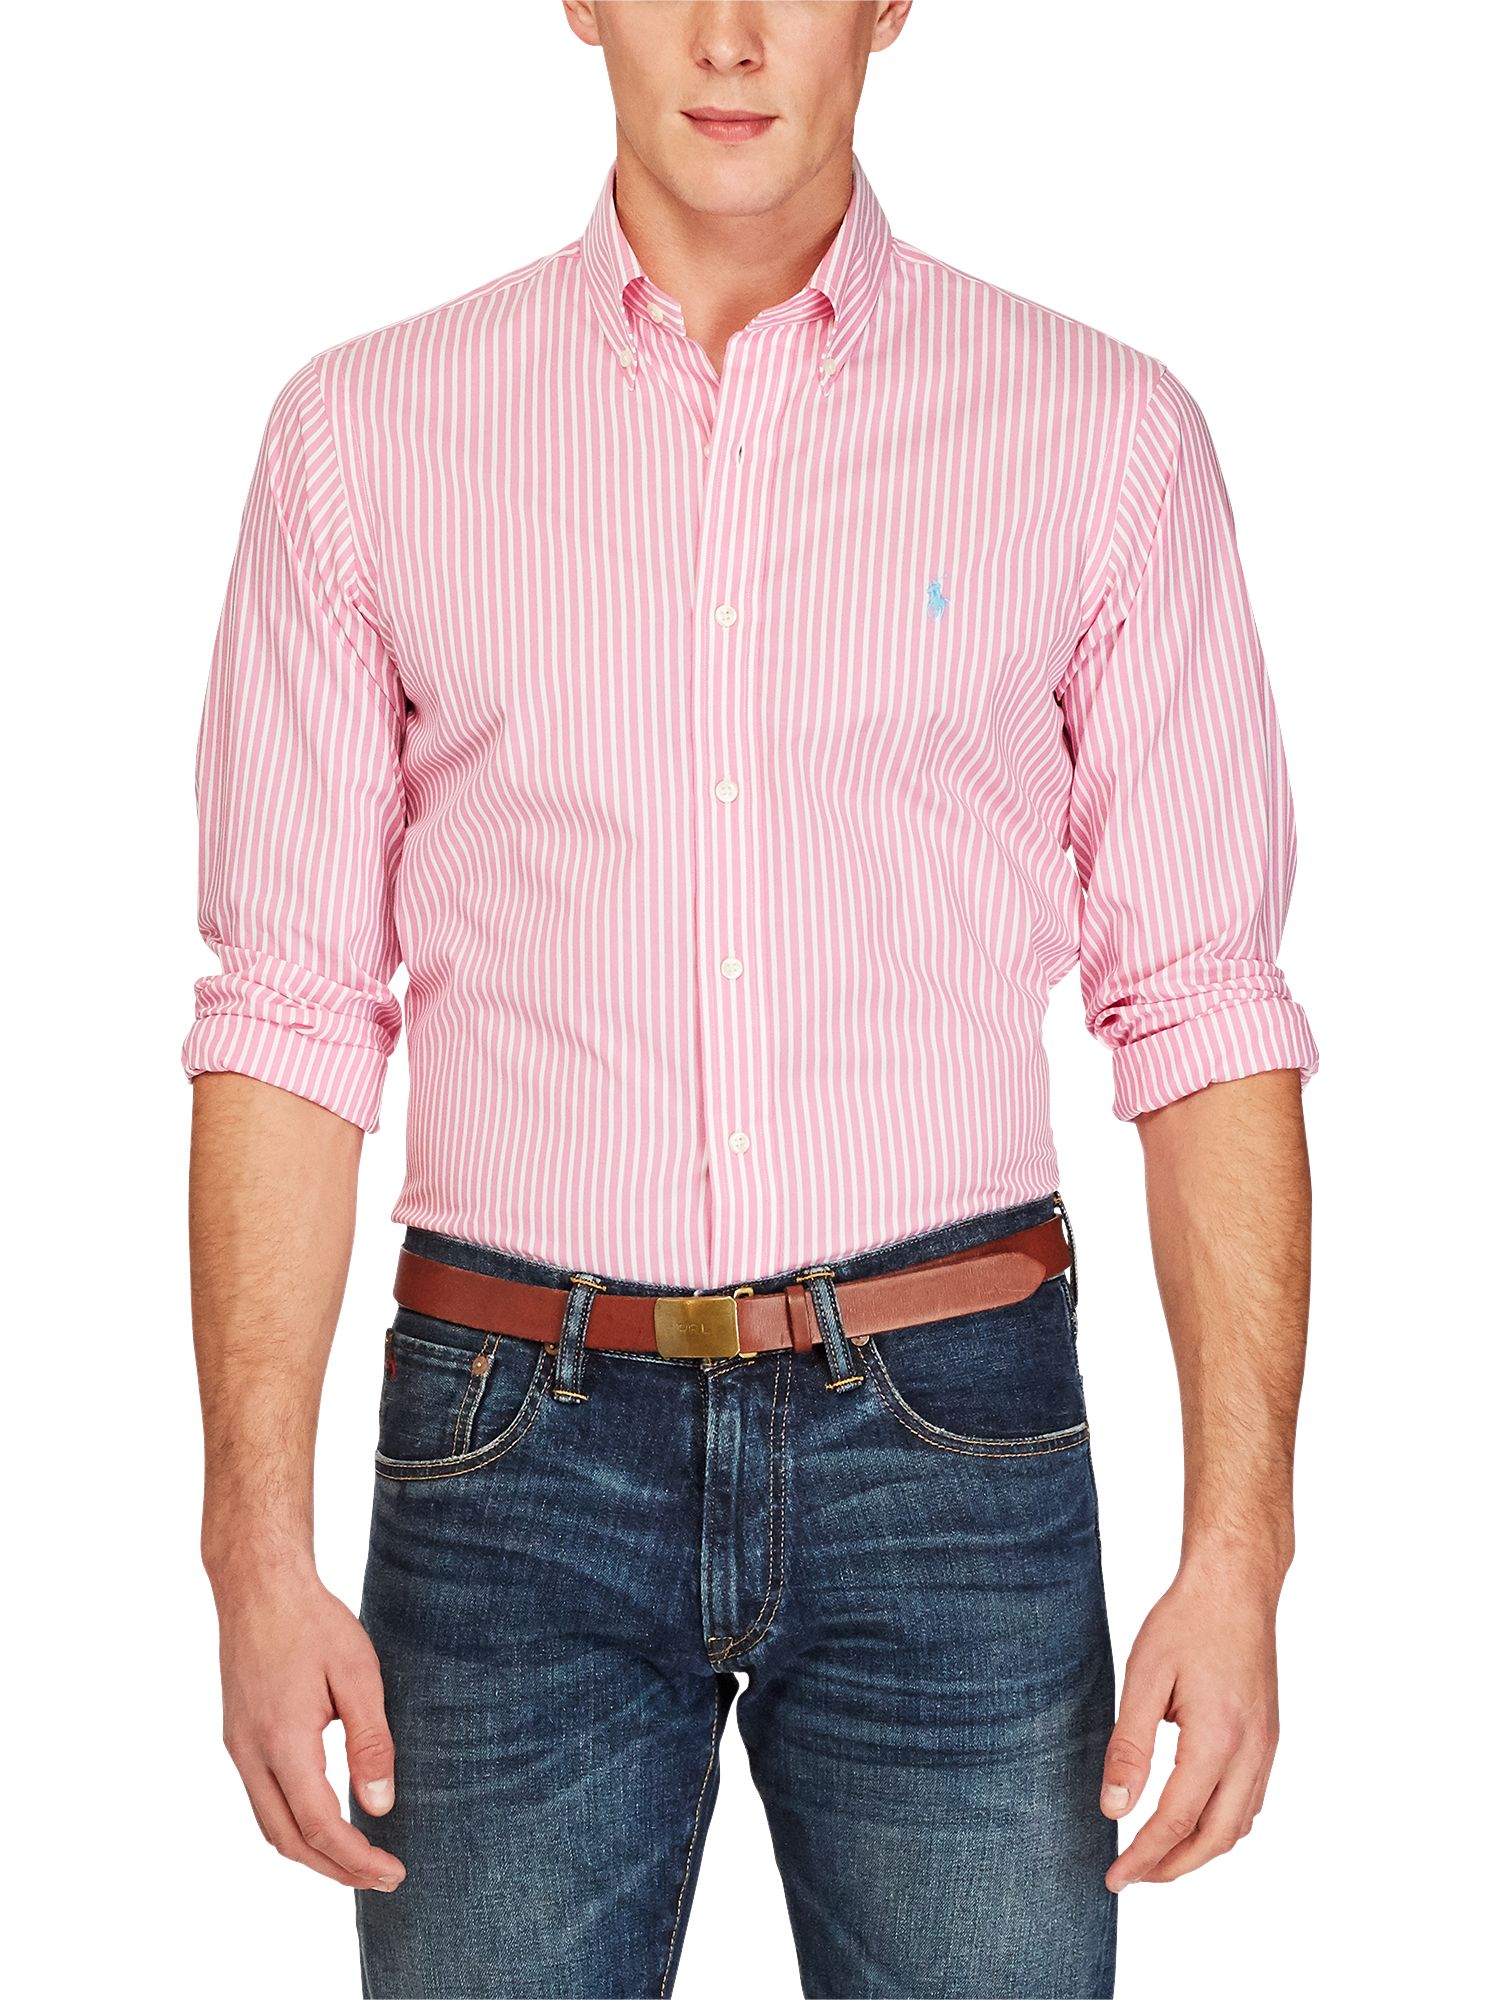 ralph lauren pink striped shirt mens